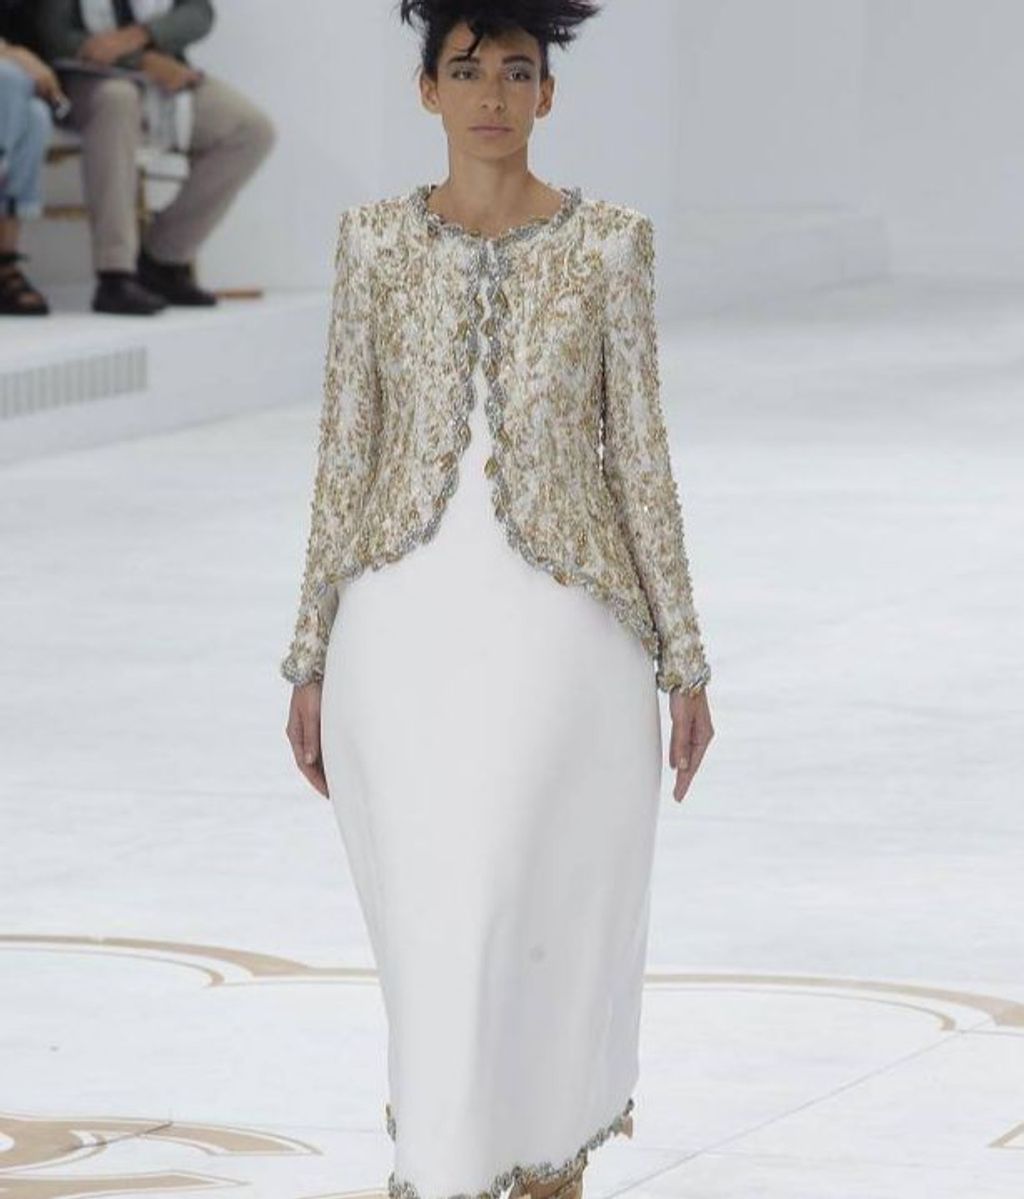 El vestido de Chanel que Tamara habría querido "copiar", según Diario Vasco